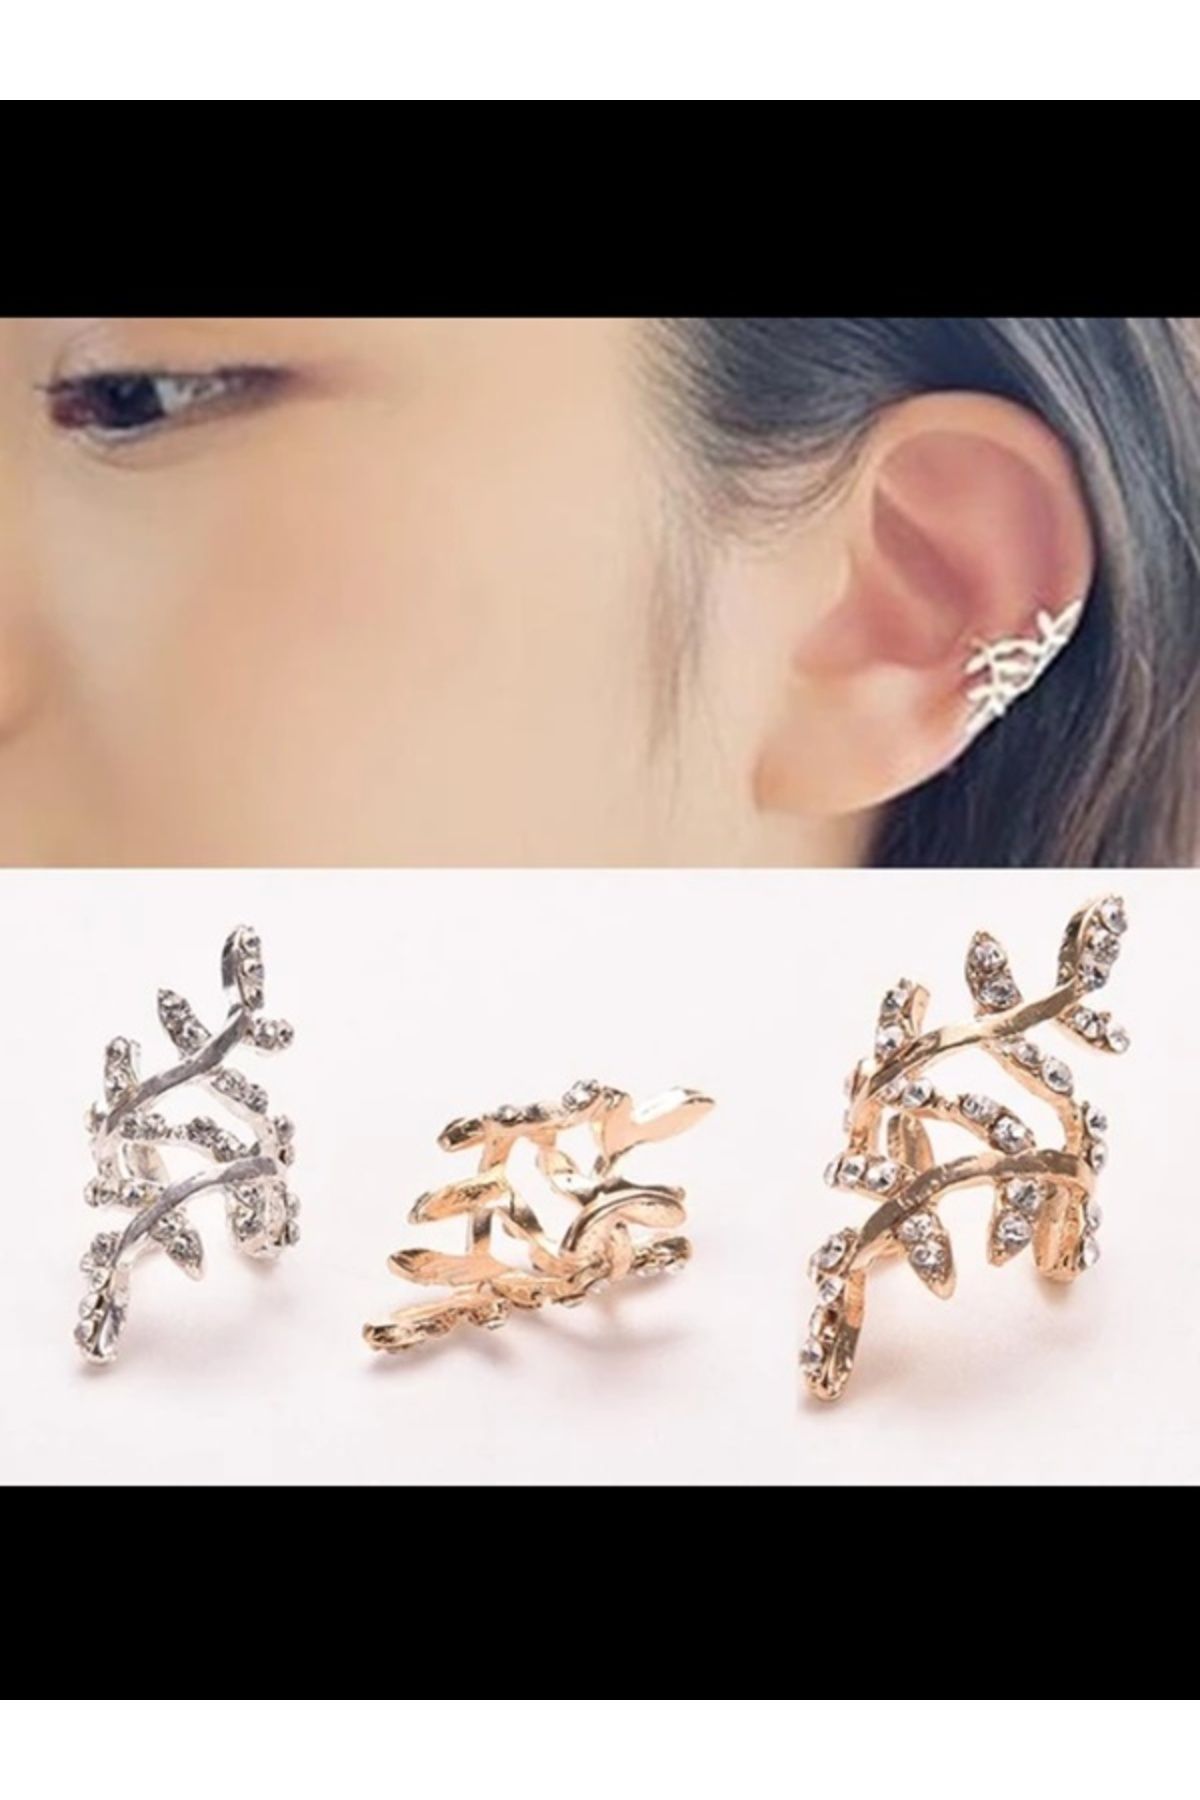 Shisa Jewel Altın Retro kristal küpe Rhinestone yaprak kulak manşet küpe kulak klipsi kadın moda takı(06)